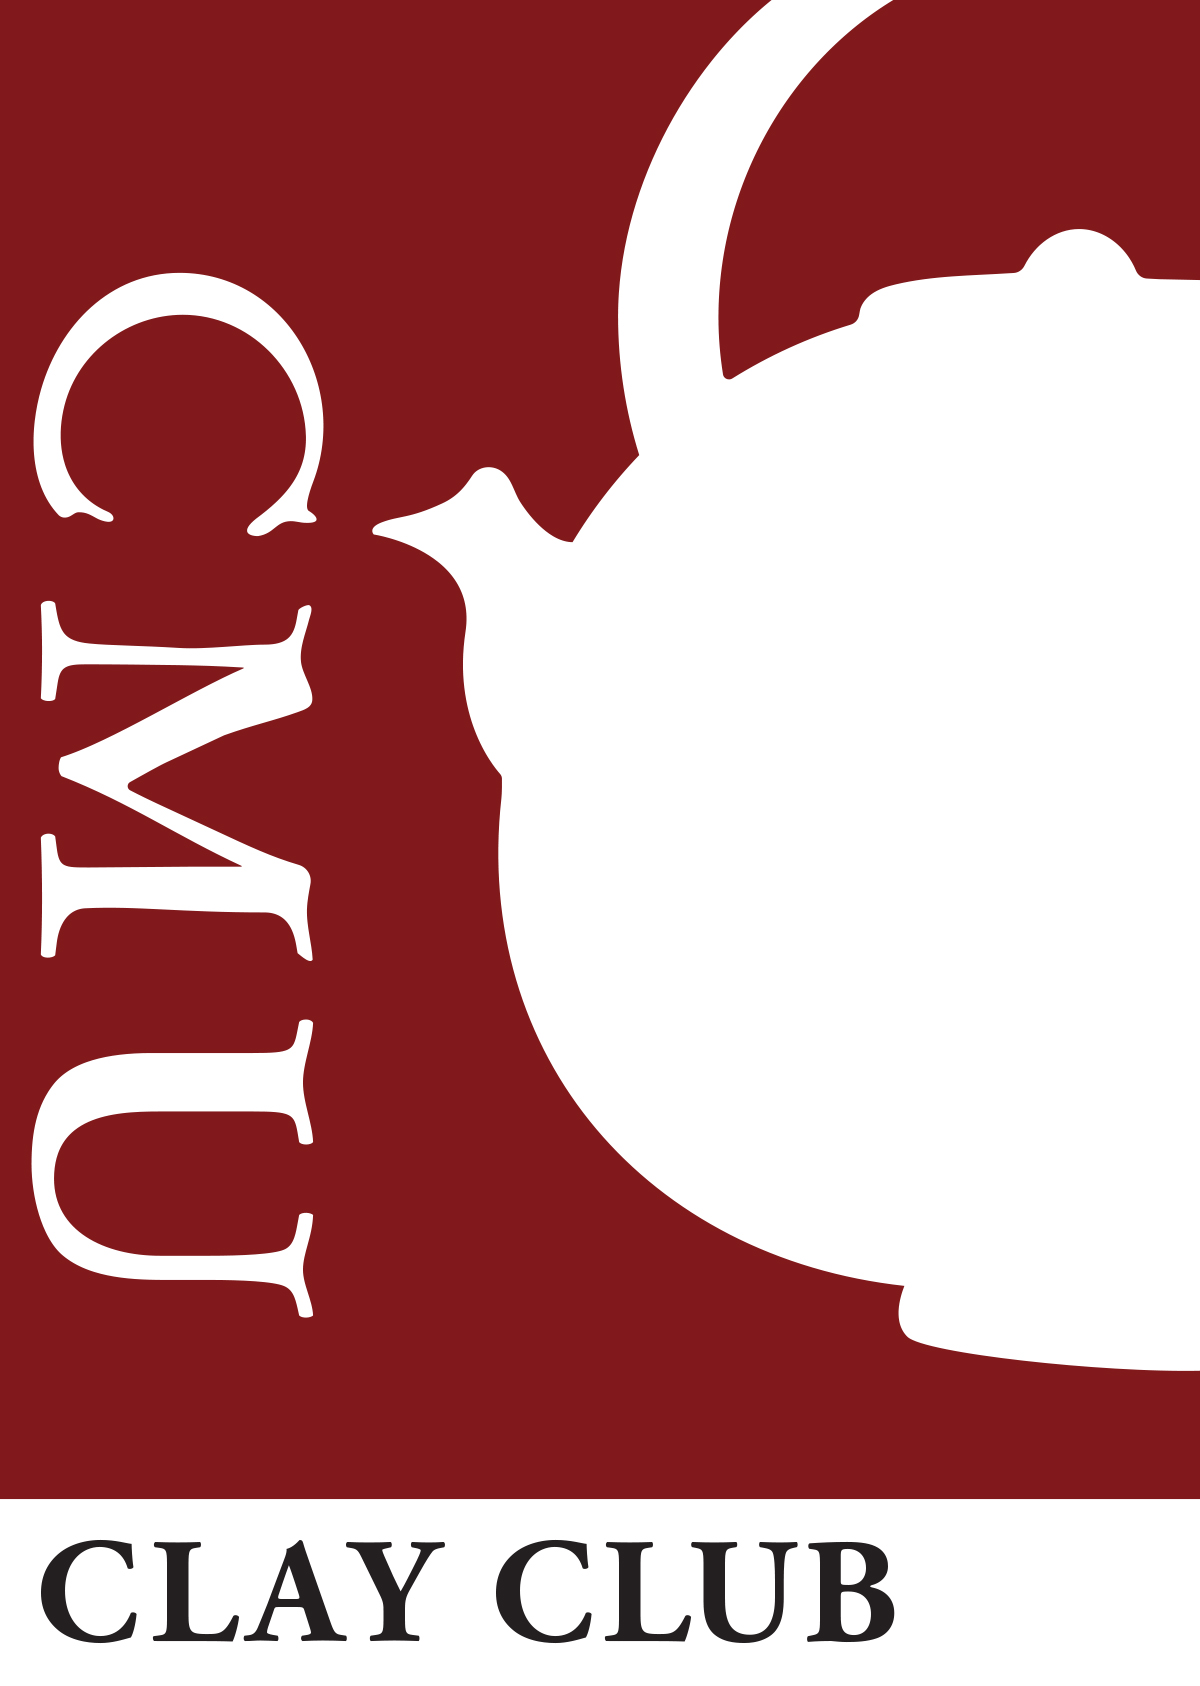 CMU Clay Club logo